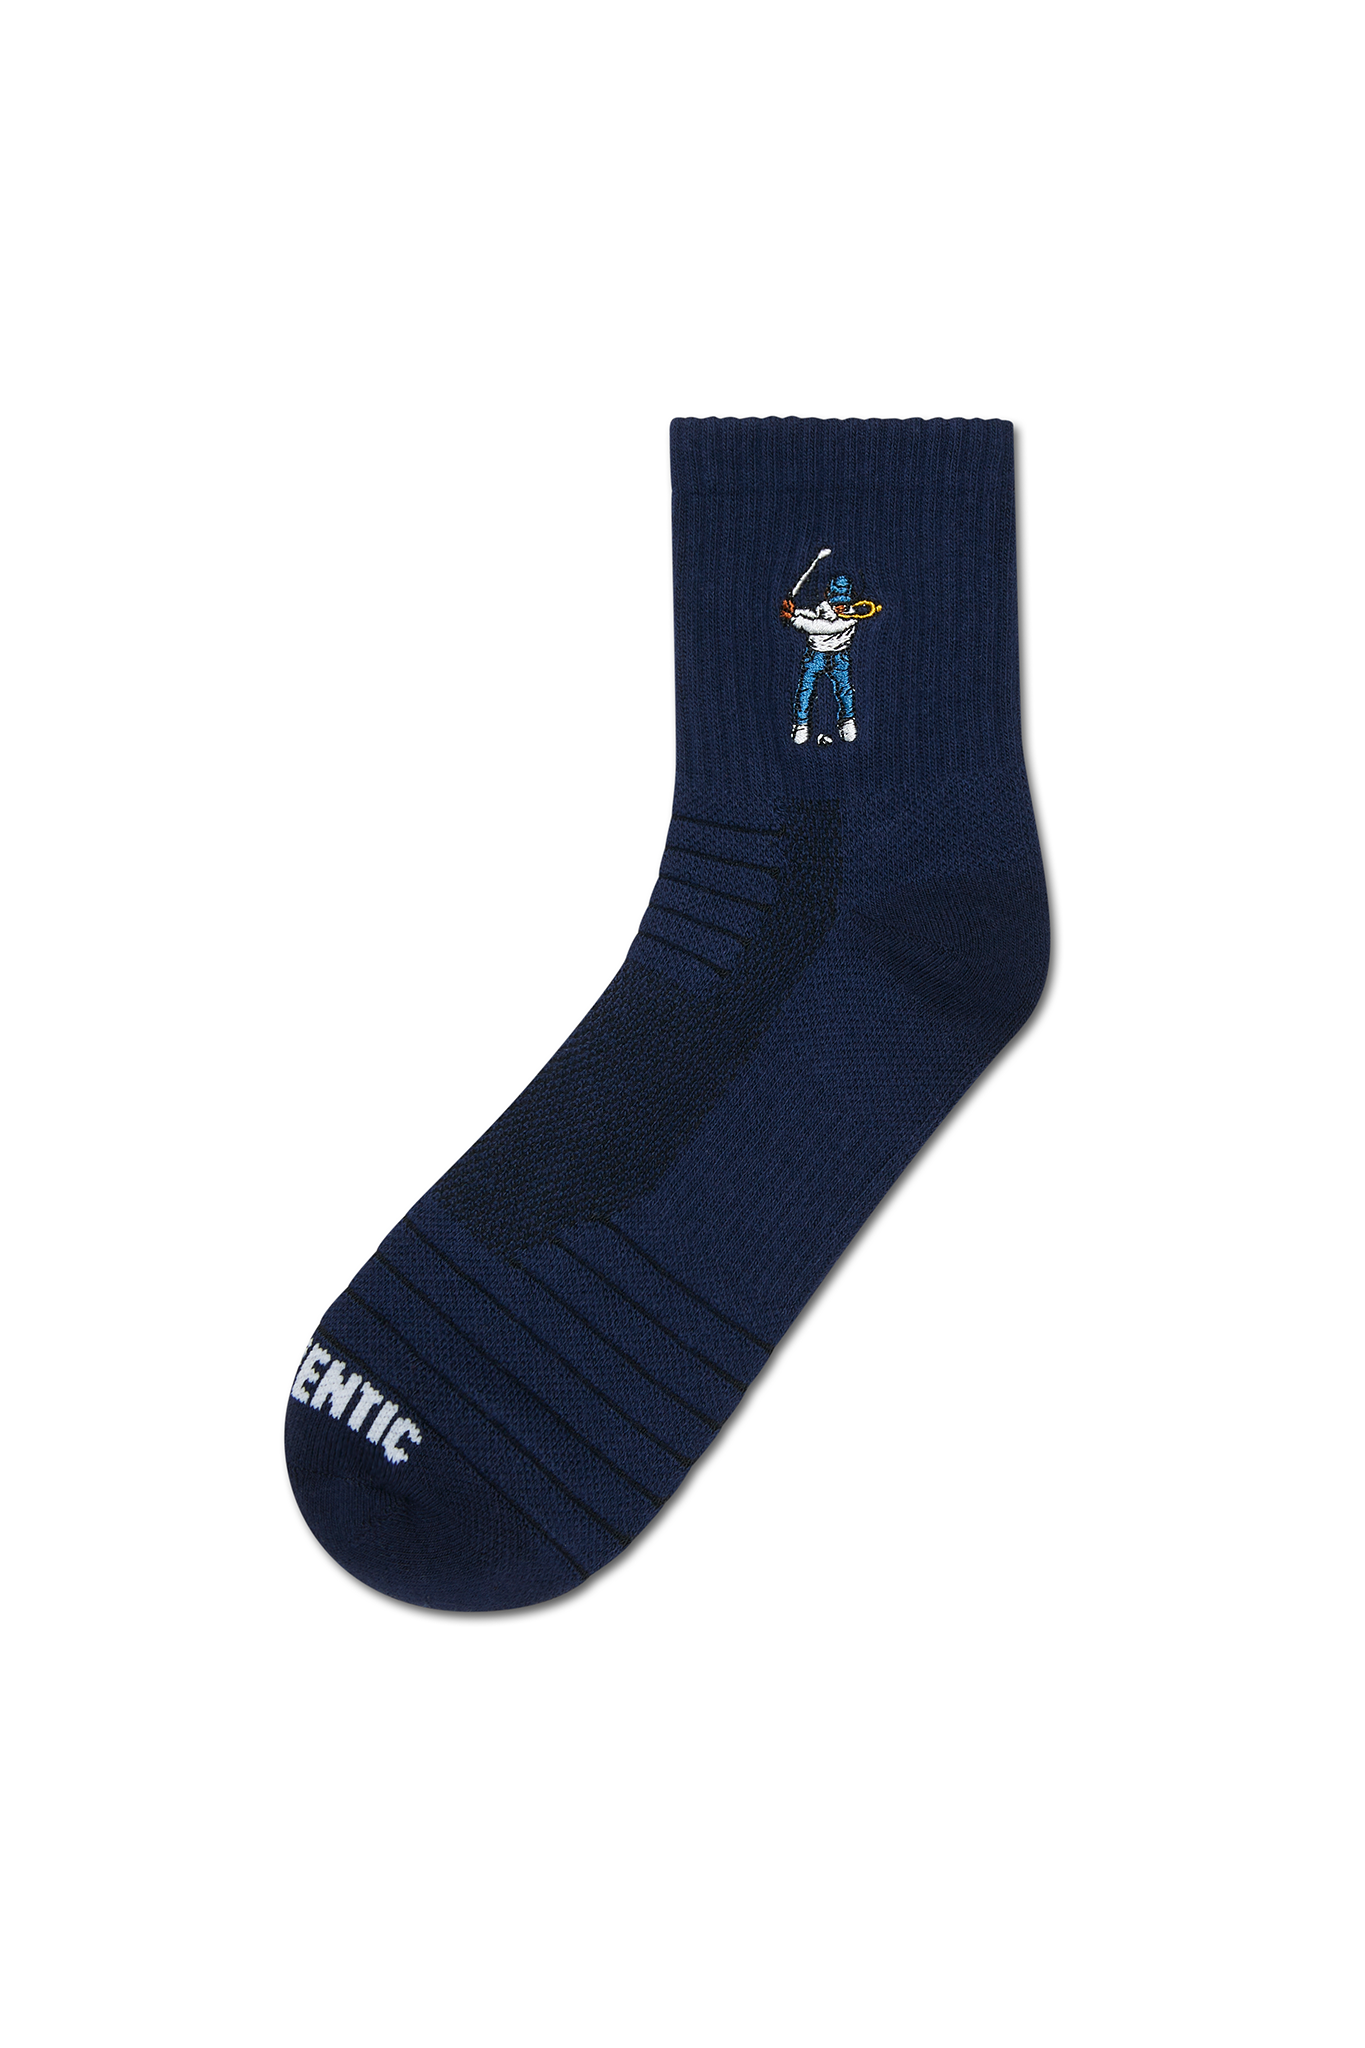 Eastside Golf Ankle Height Logo Socks Navy